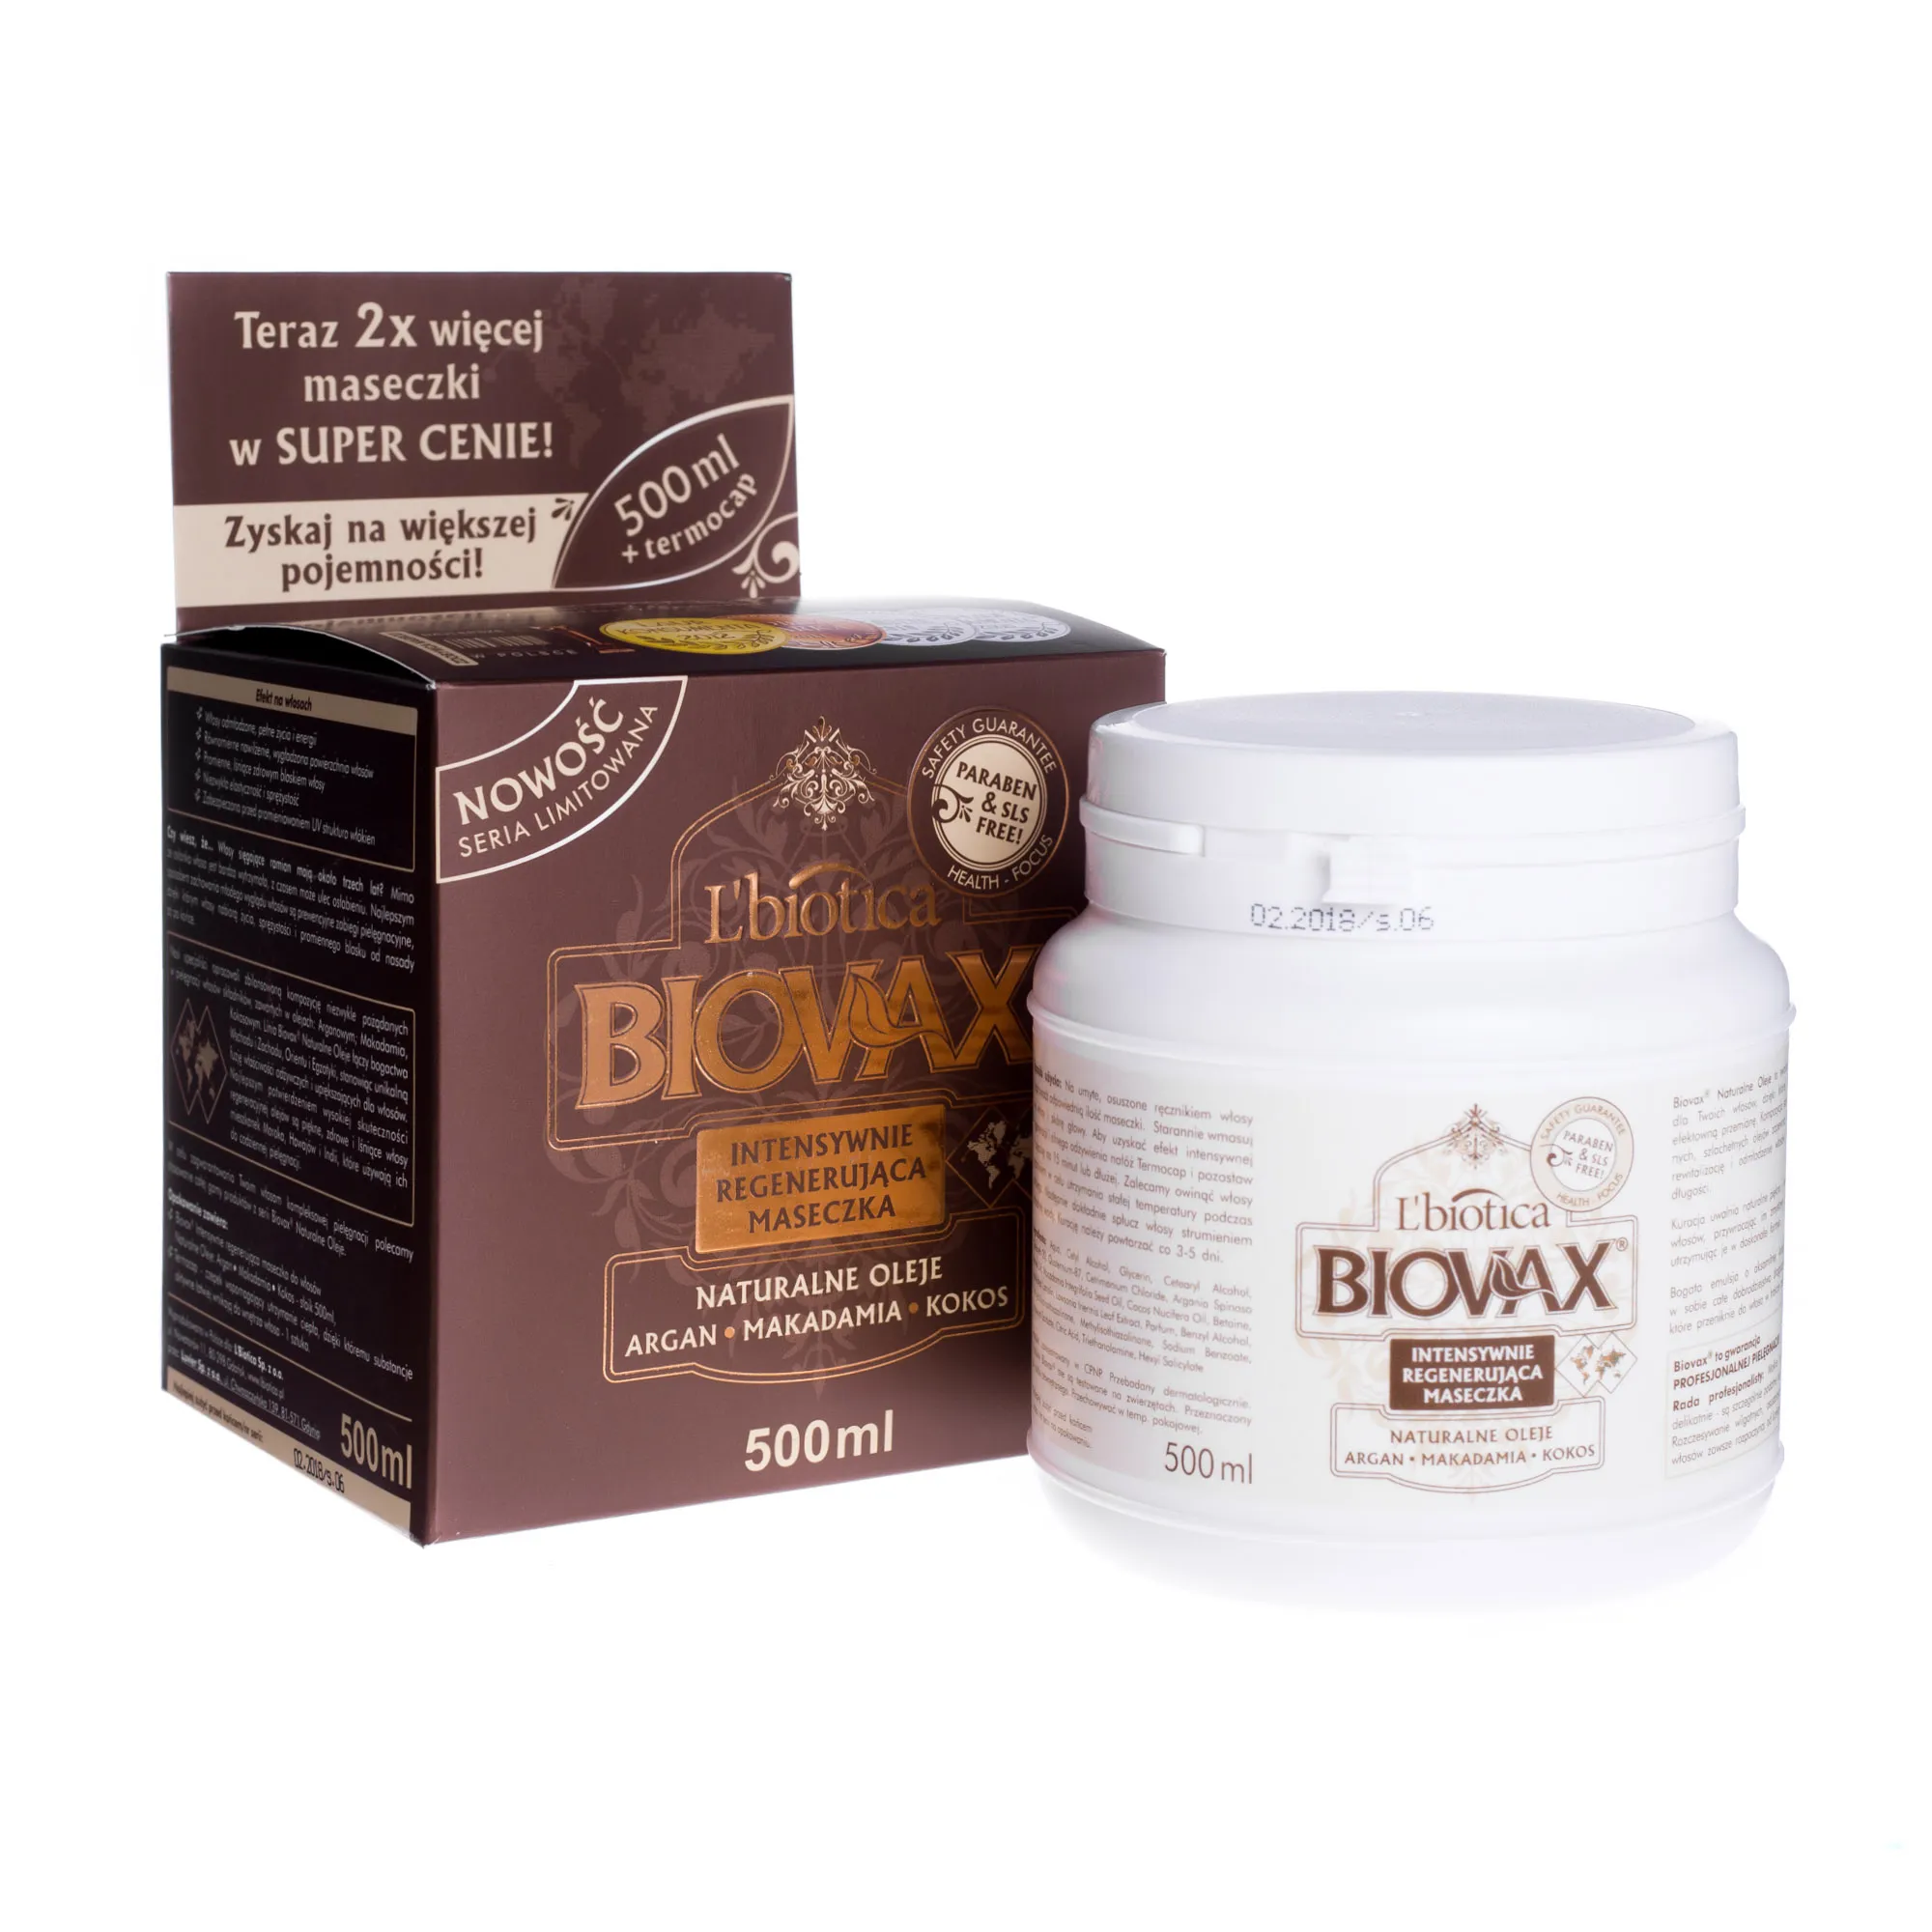 L'biotica Biovax, intensywnie regenerująca maseczka, naturalne oleje, 500 ml 